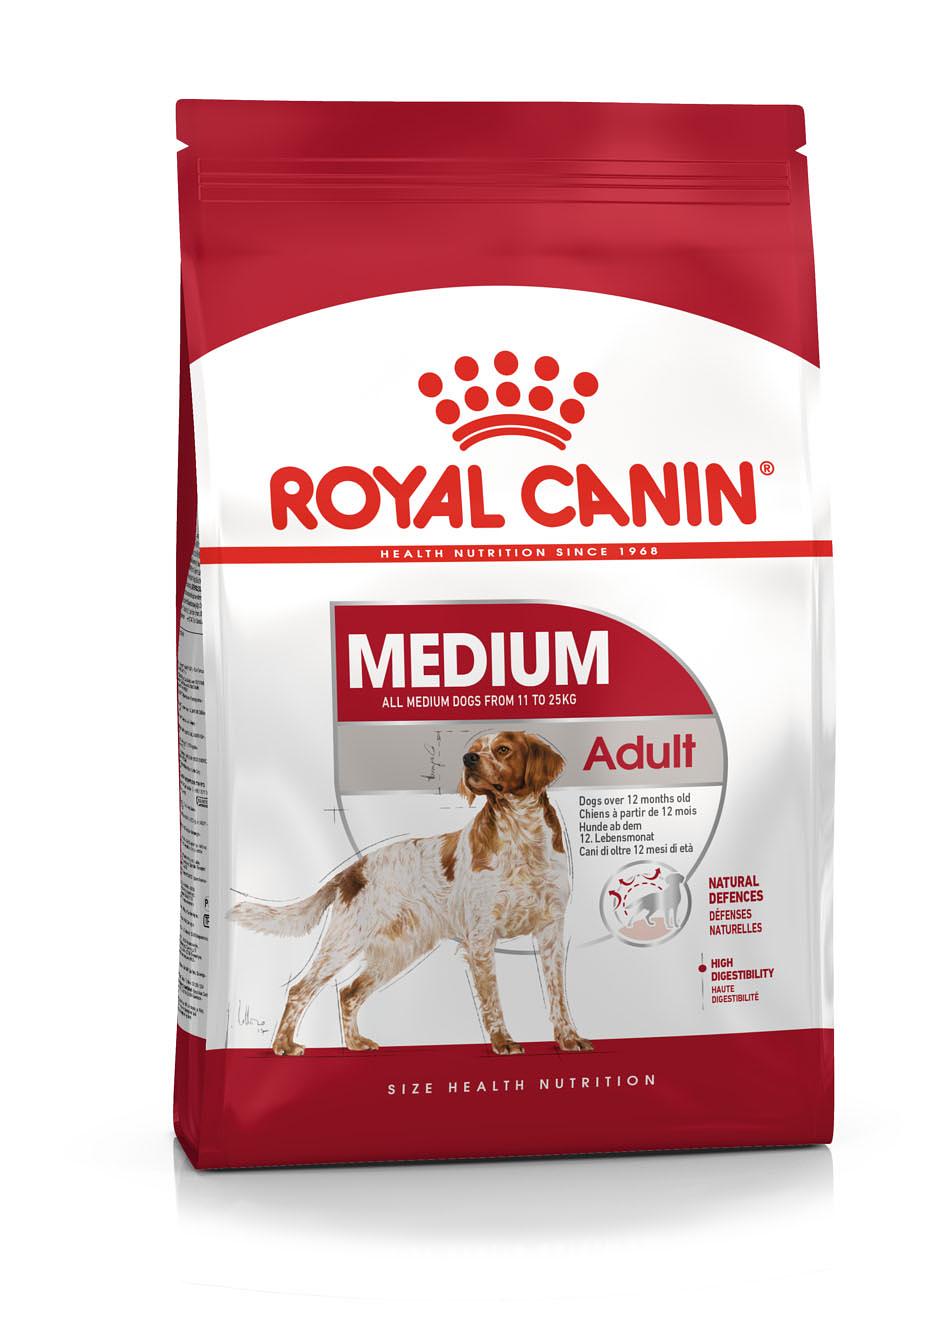 Royal Canin – Medium Adult bestellen | petfriends.ch